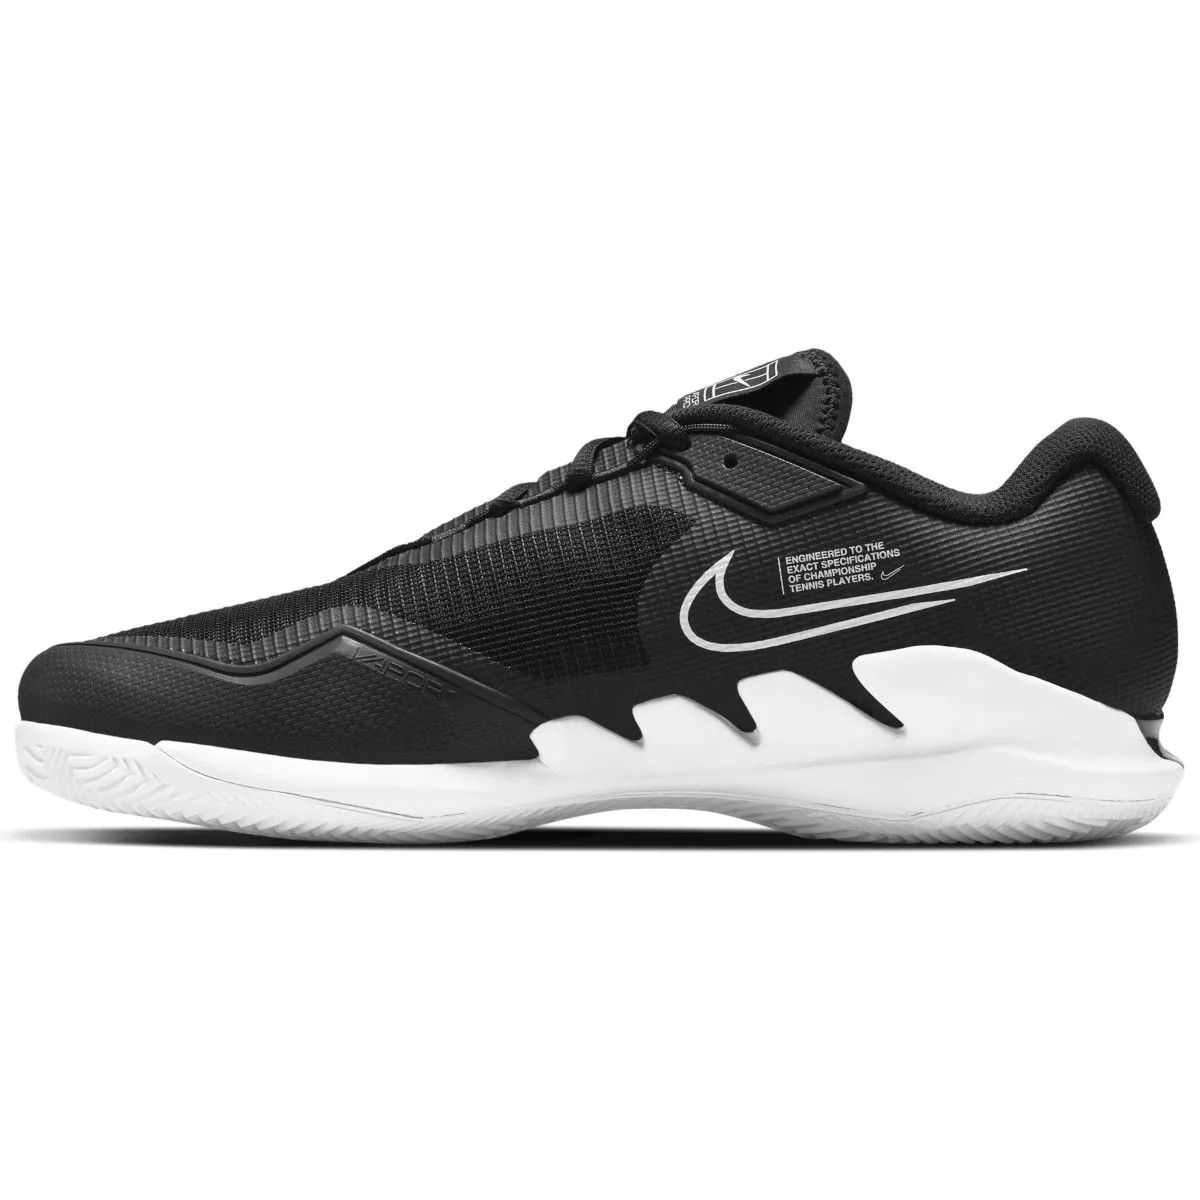 NikeCourt Air Zoom Vapor Pro Men's Clay Court Tennis Shoes C